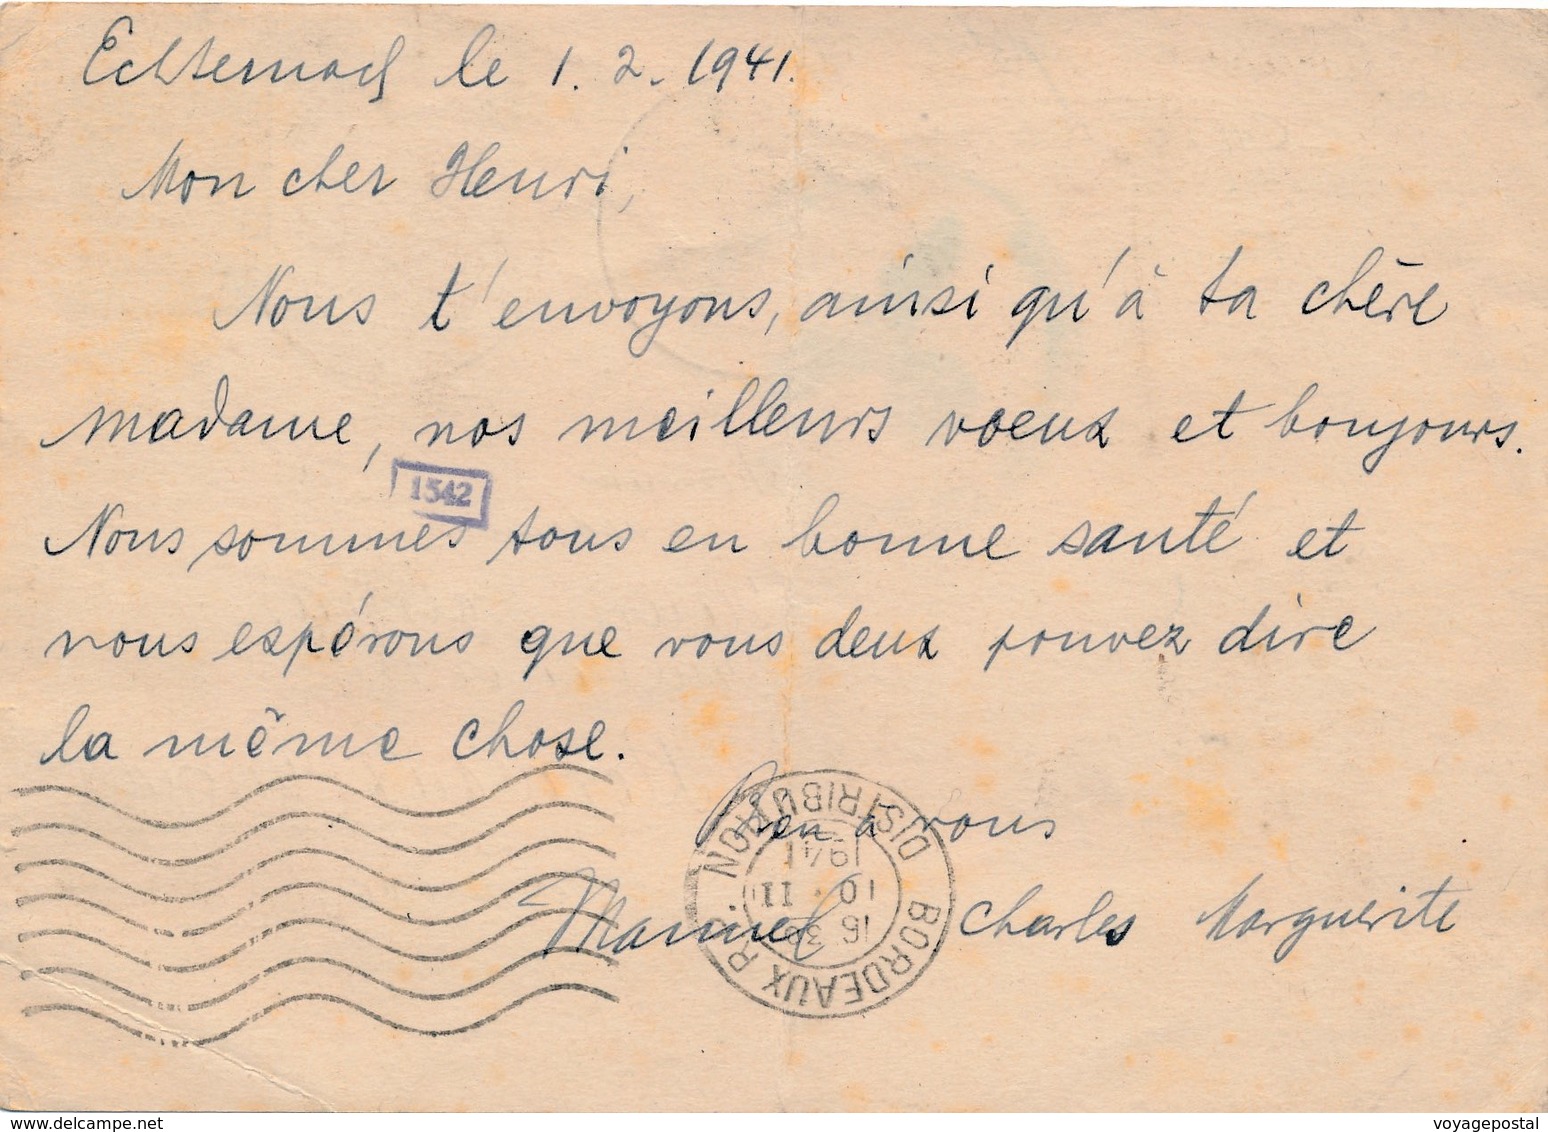 Entier Postal Echternach Luxemburg Surcharge Pour La France - 1940-1944 German Occupation